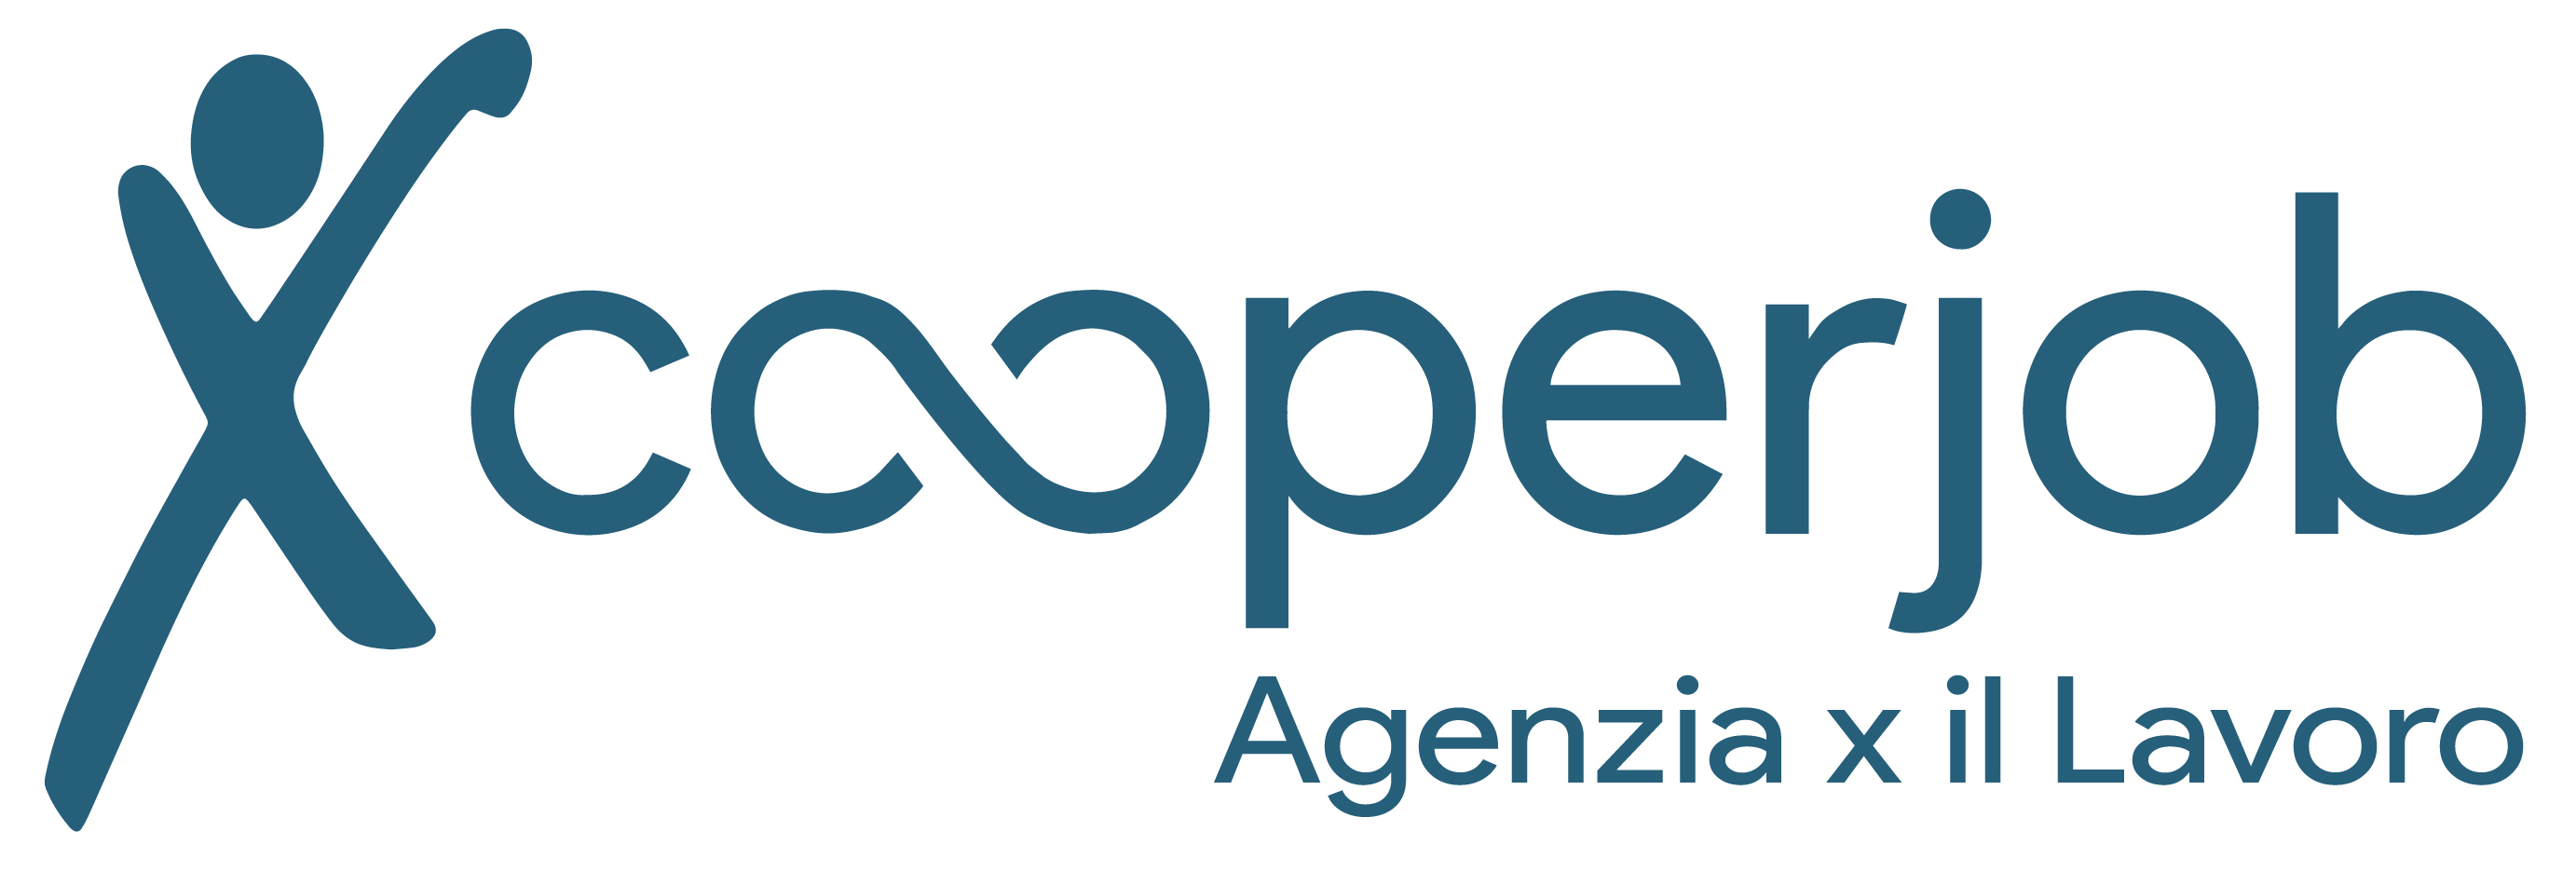 cooperjob_logo-nuovo_vector_DEFINITIVO_lo_lo_res